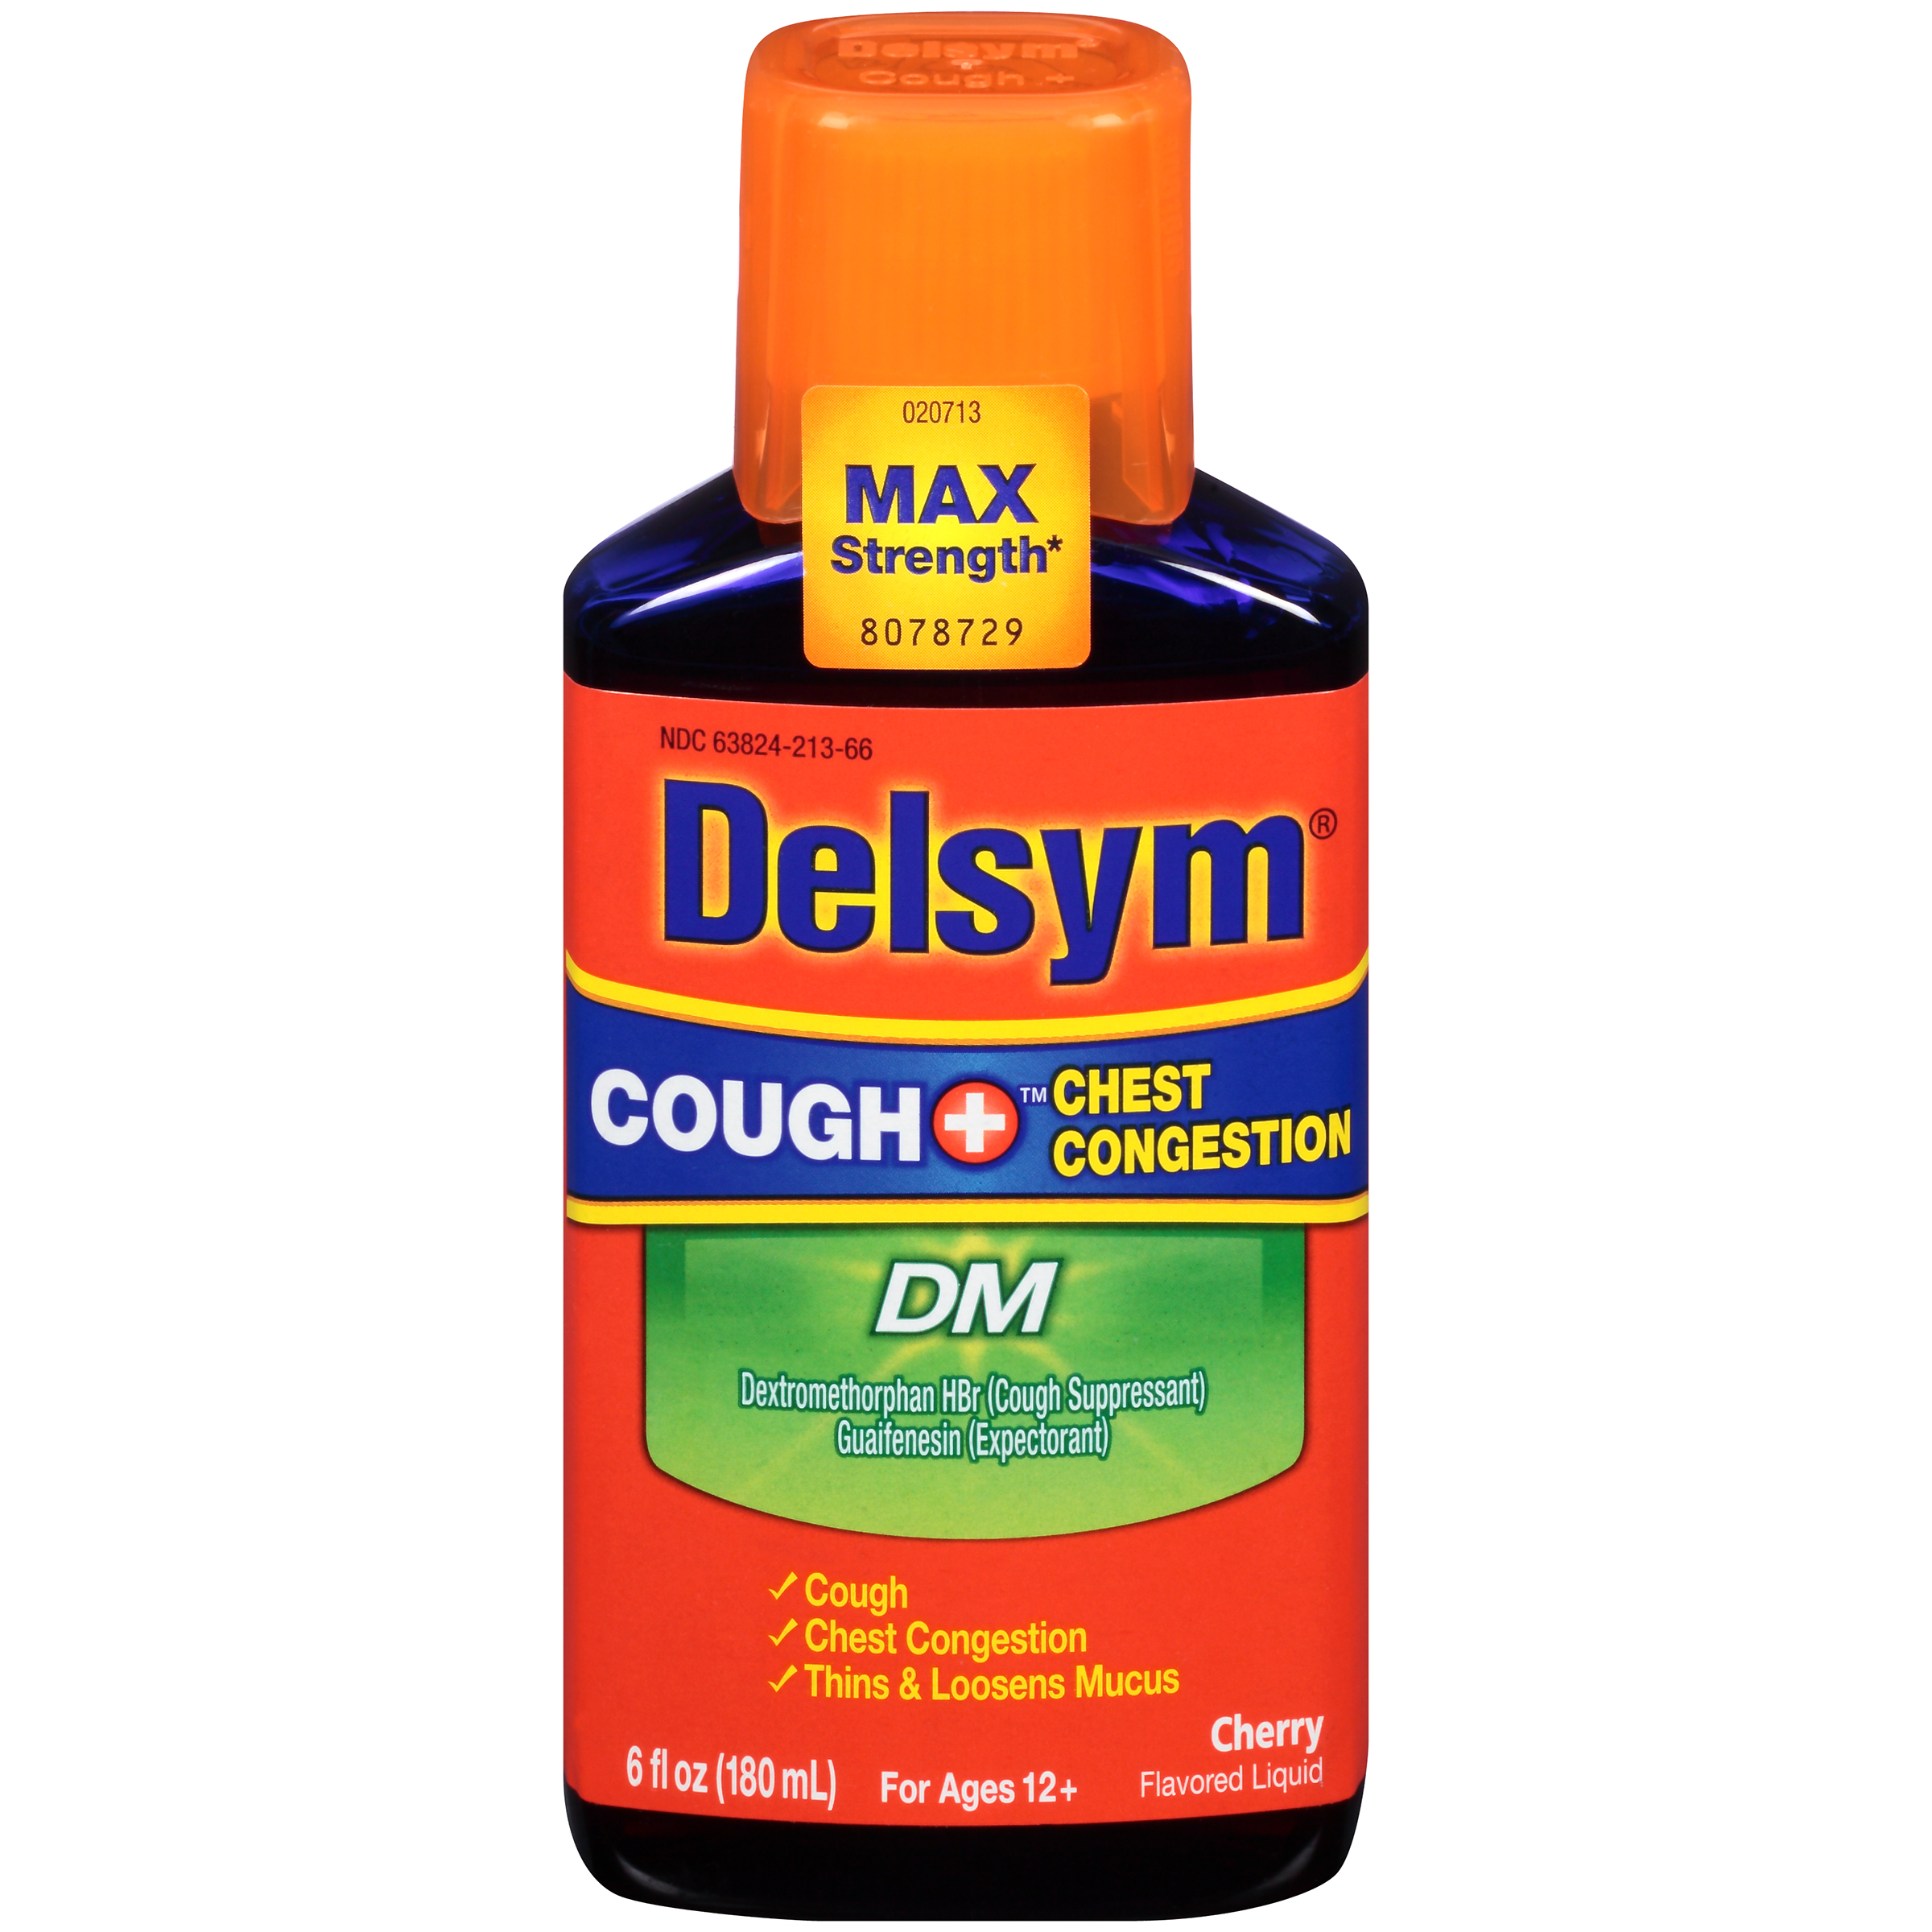 delsym-cough-suppressant-expectorant-6-fl-oz-health-wellness